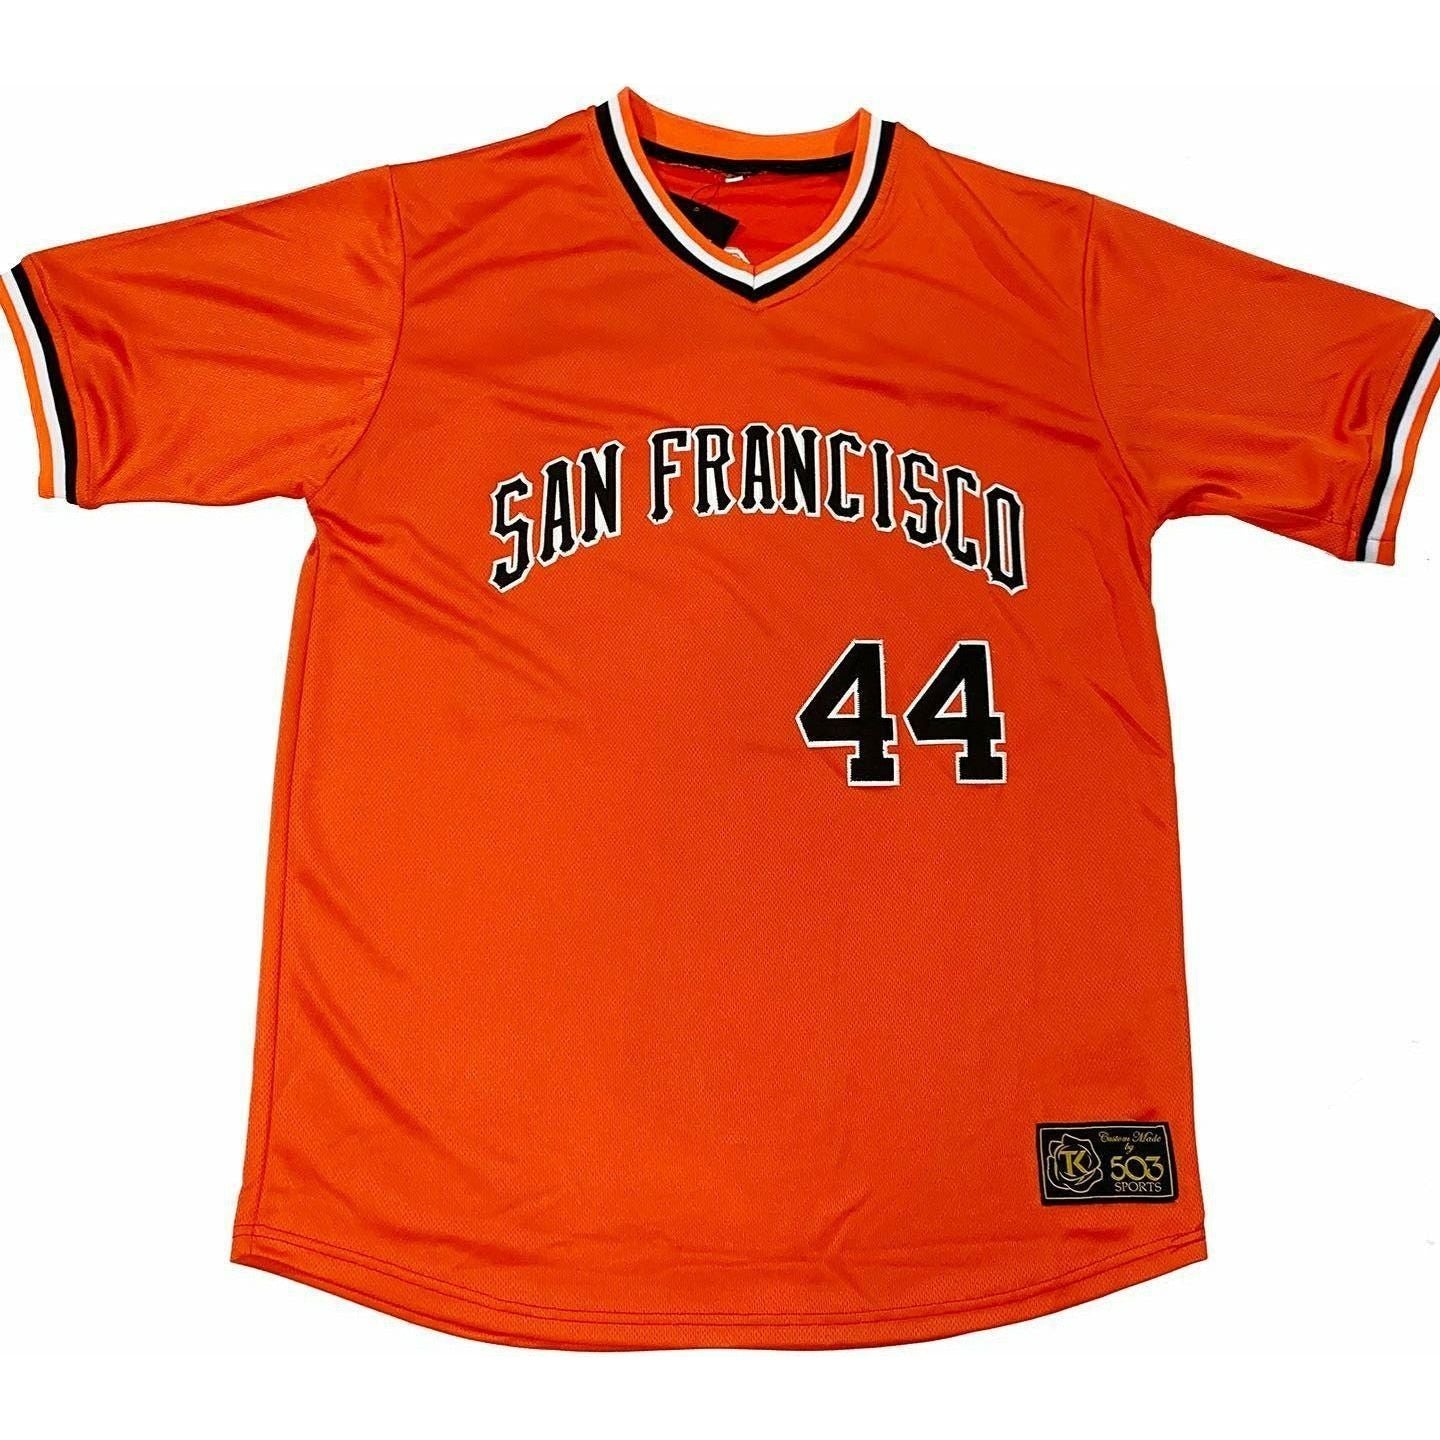 San Francisco Pullover Baseball Jersey - Black - Medium - Royal Retros